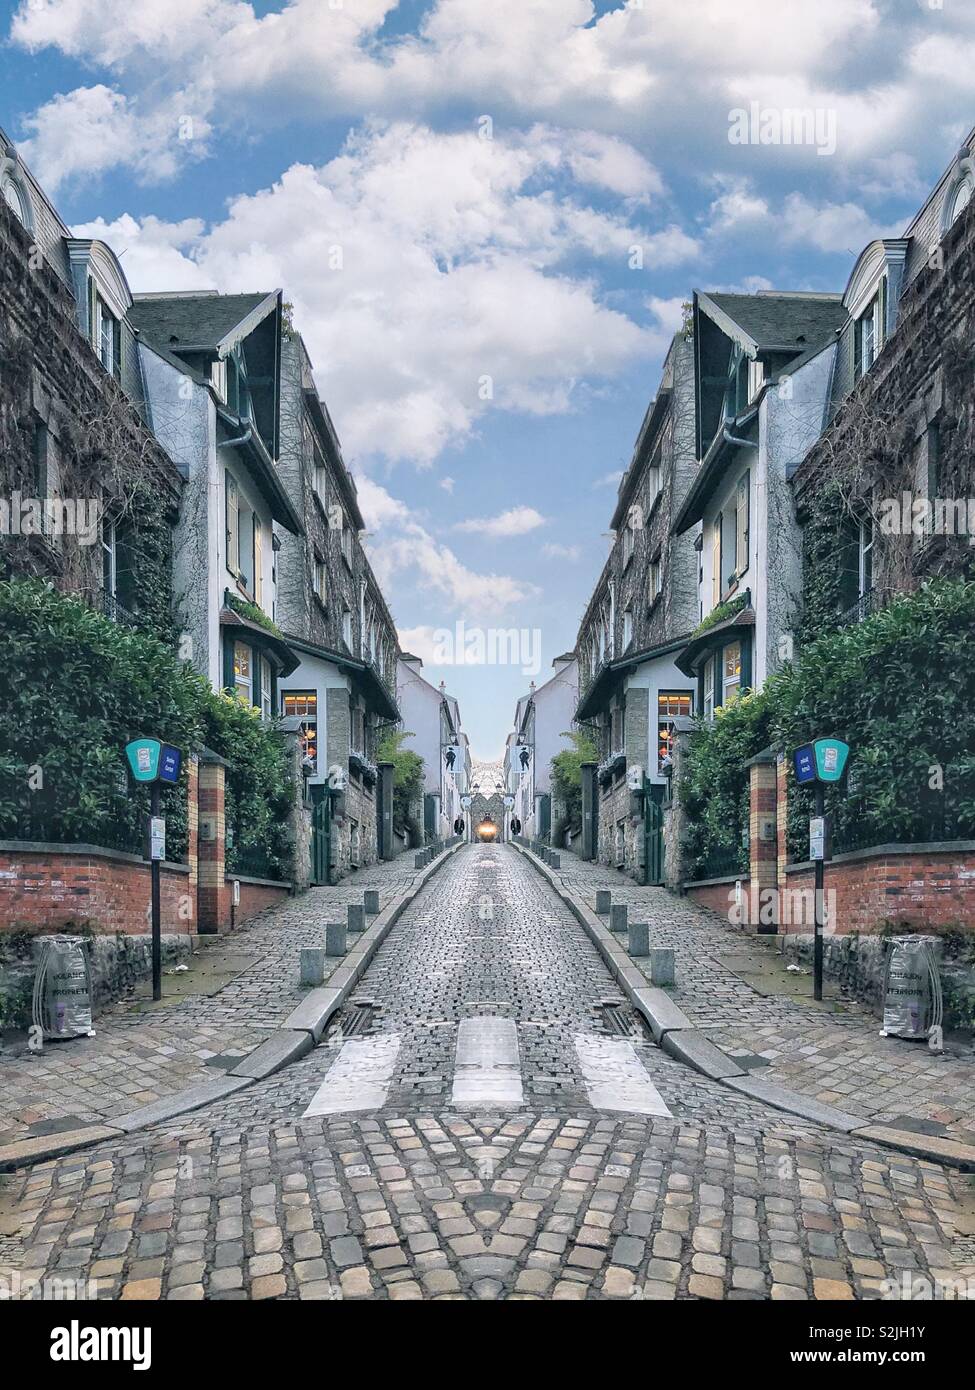 Una surreale immagine speculare scena di strada che è arte digitale creata da un'immagine di un quartiere di Londra. Foto Stock